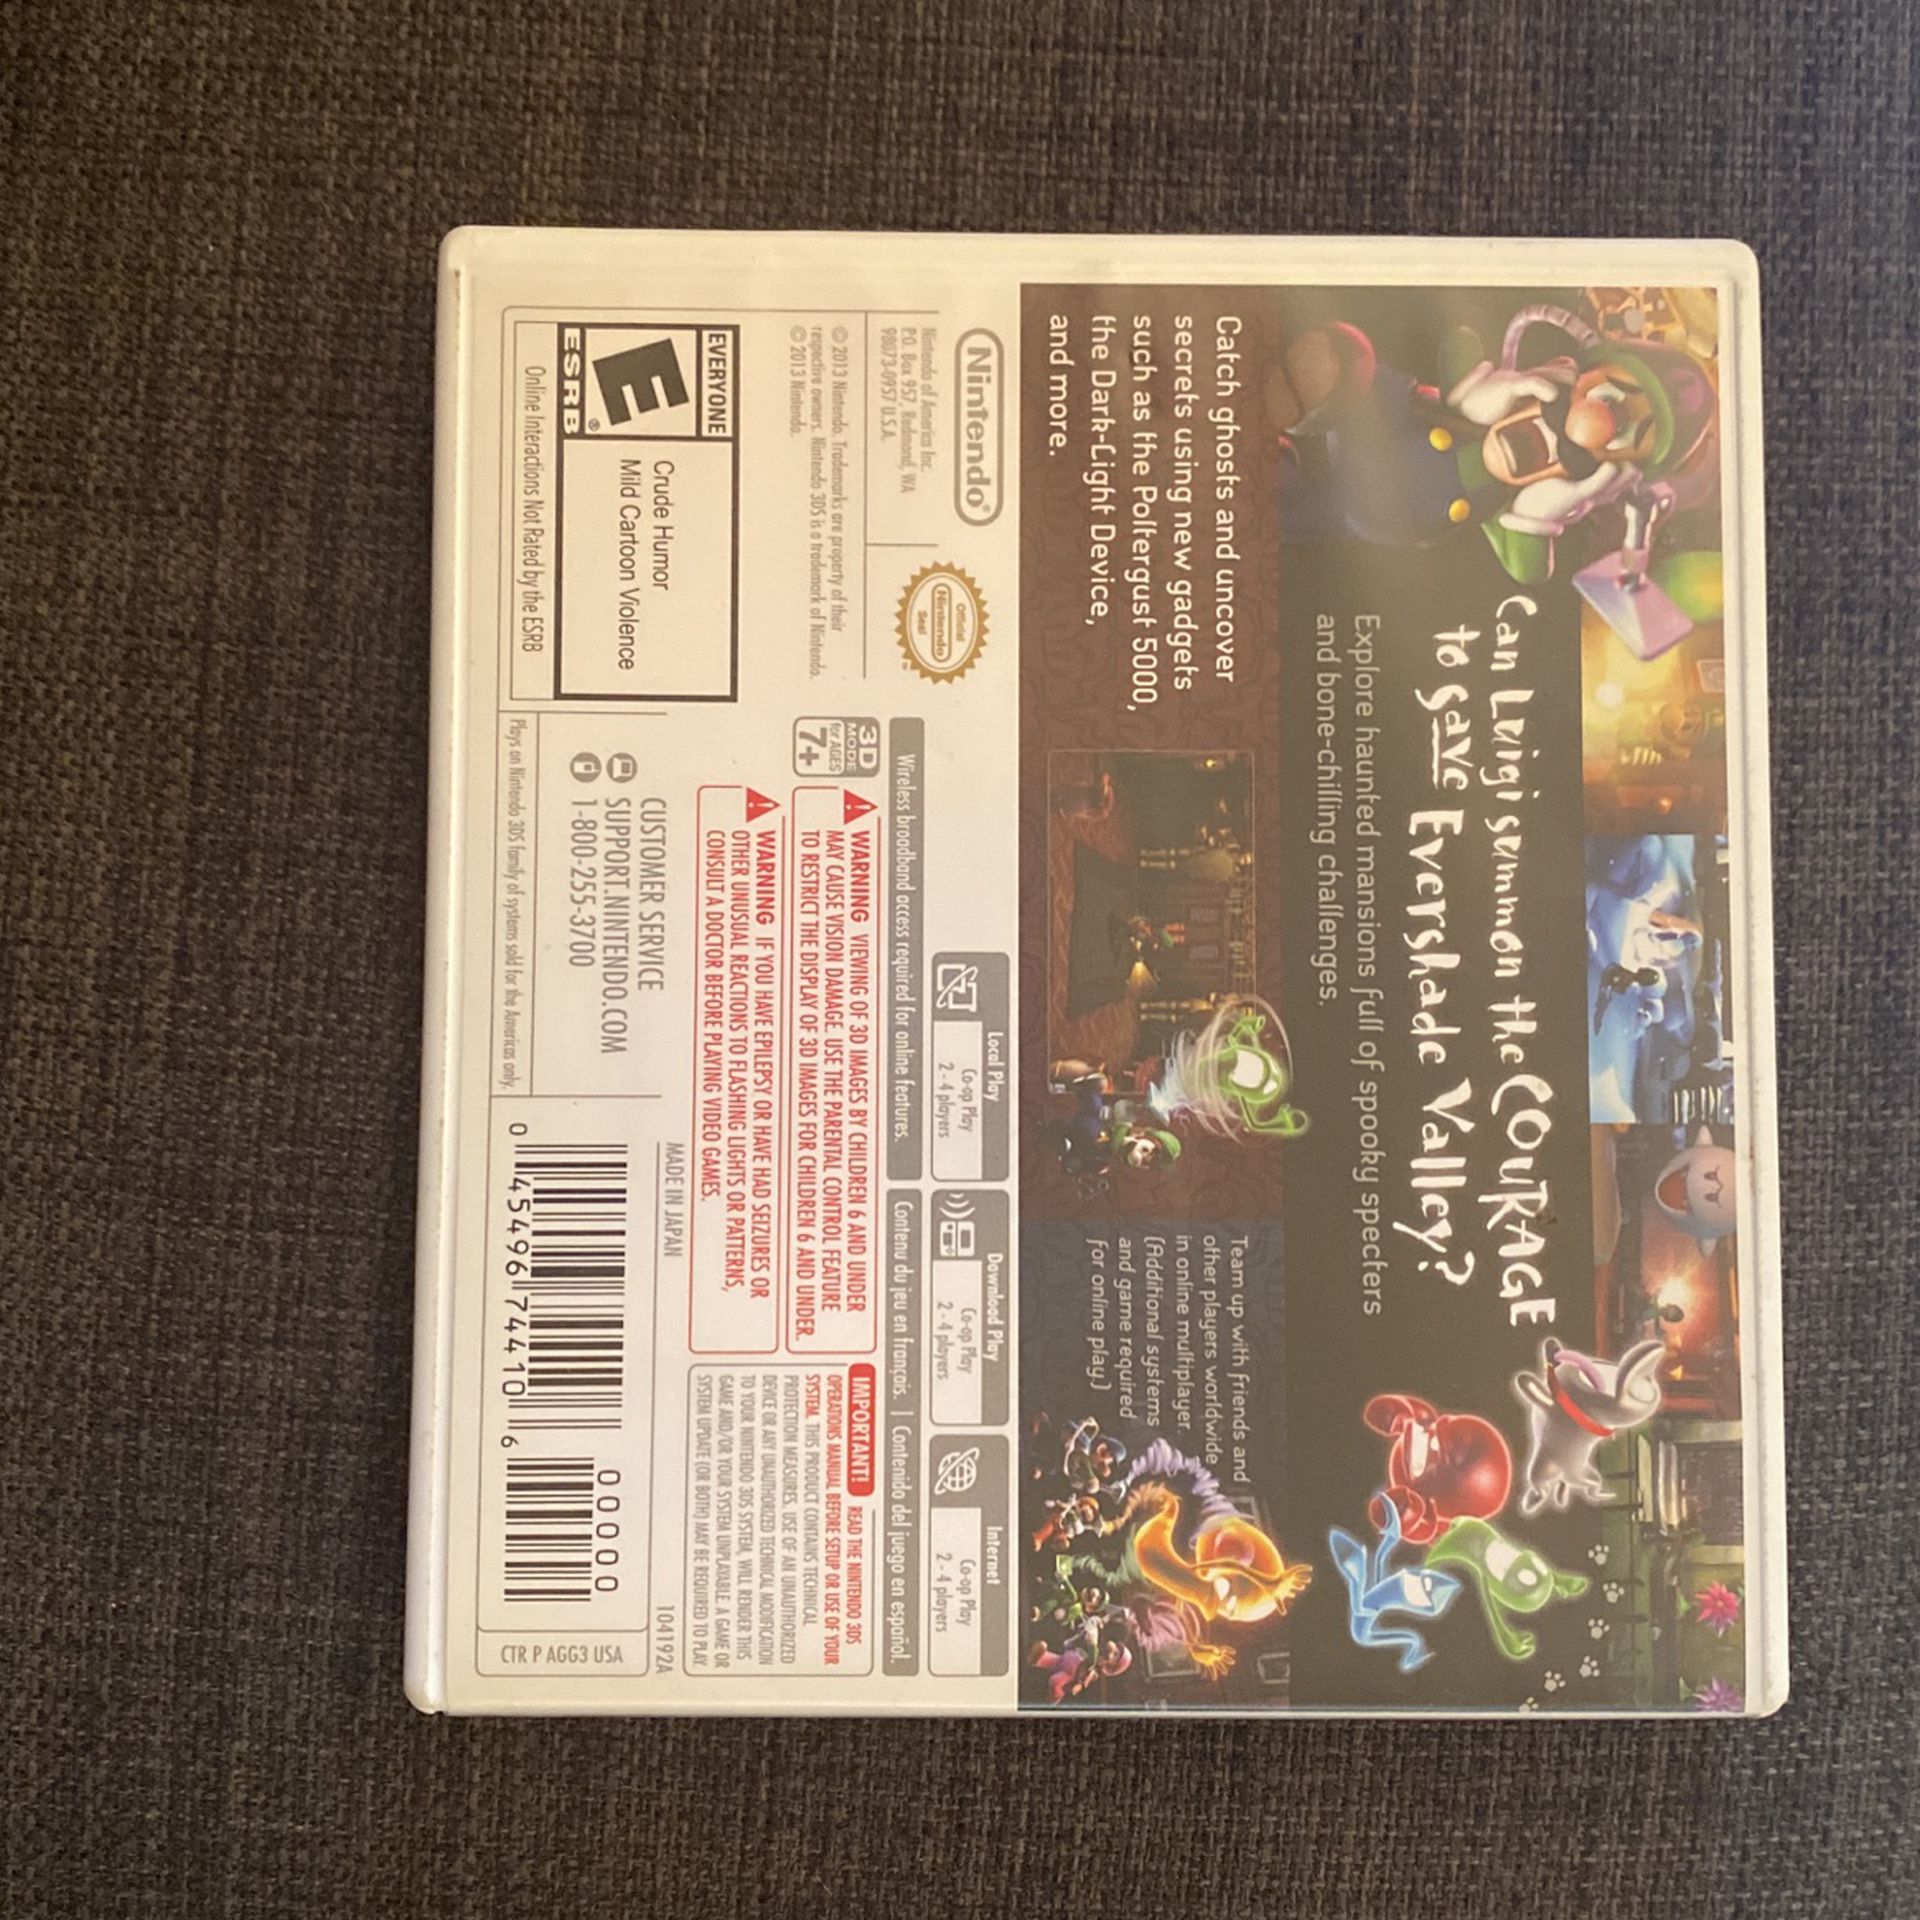 Luigi’s Mansion Dark Moon for 3DS